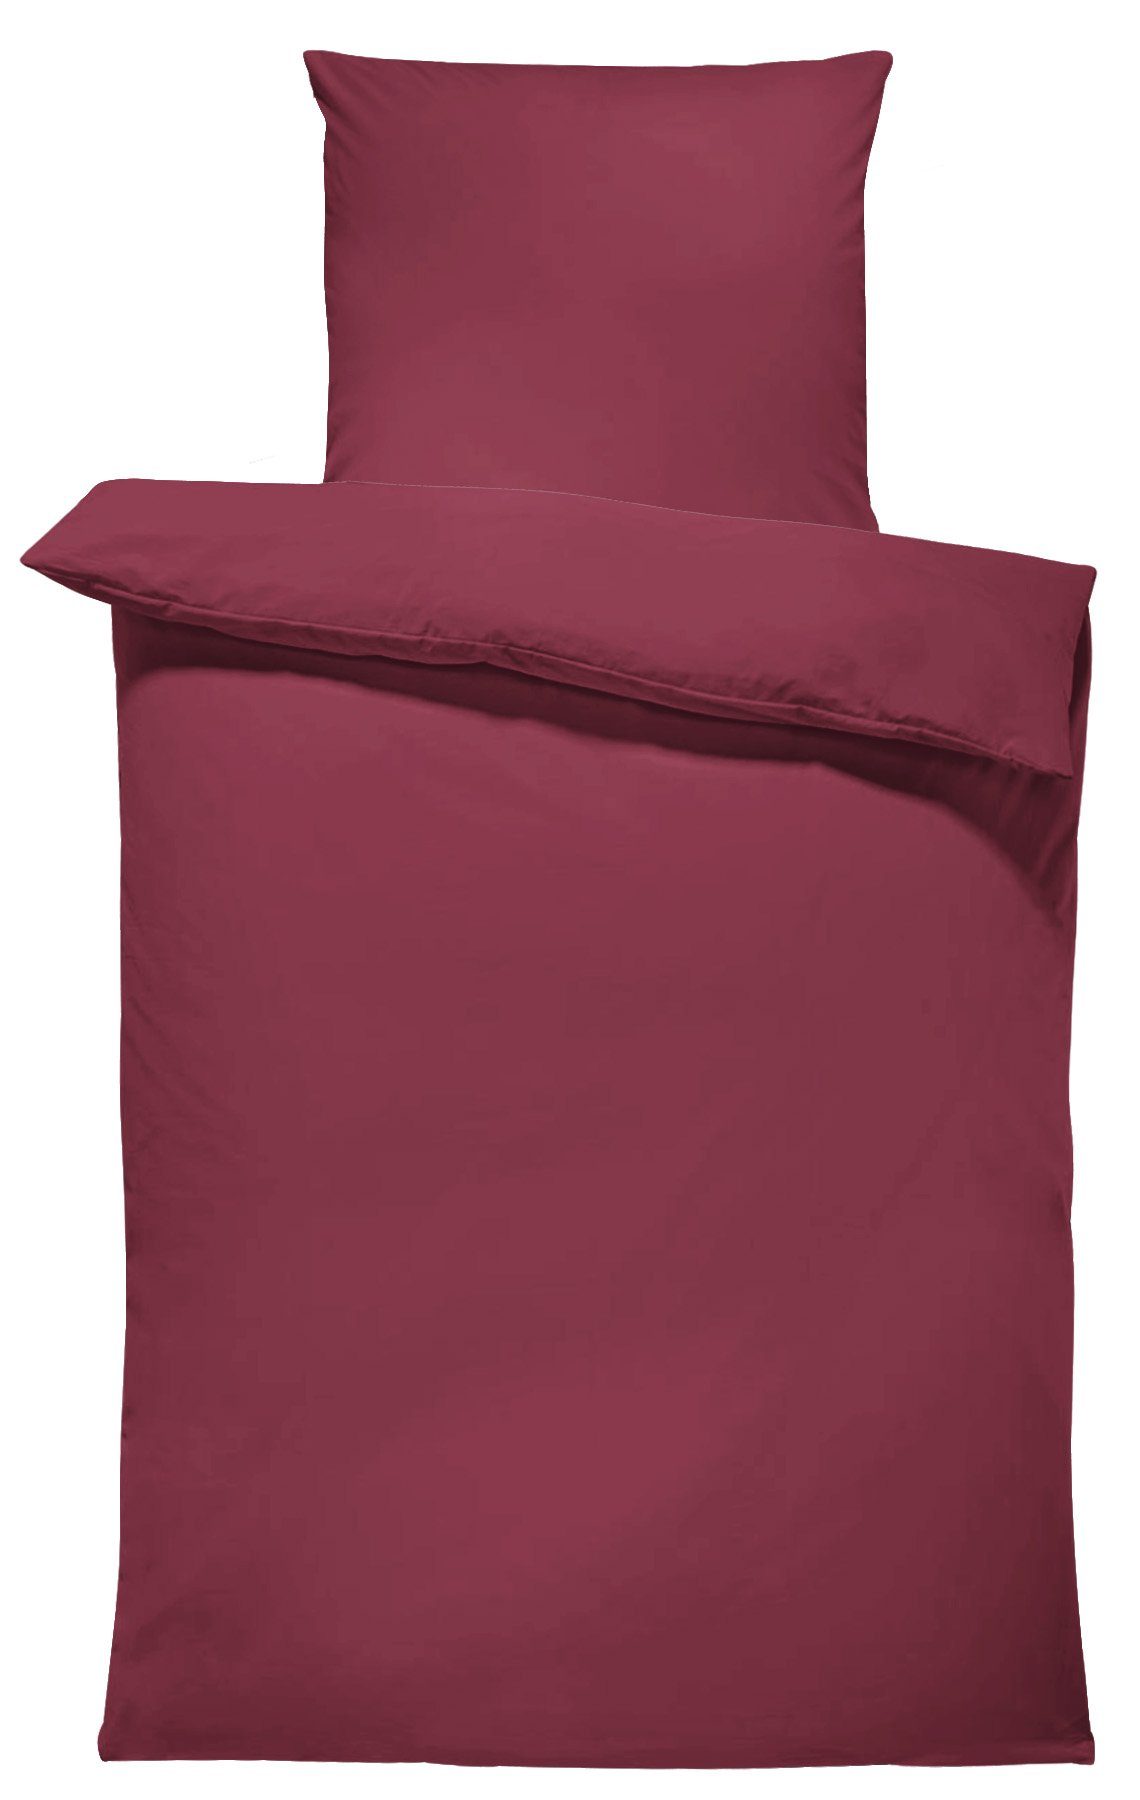 Bettwäsche Unifarben Einfarbig, One Home, Renforcé, 2 teilig, Baumwolle mit Reißverschluss, Komfortgröße bordeaux